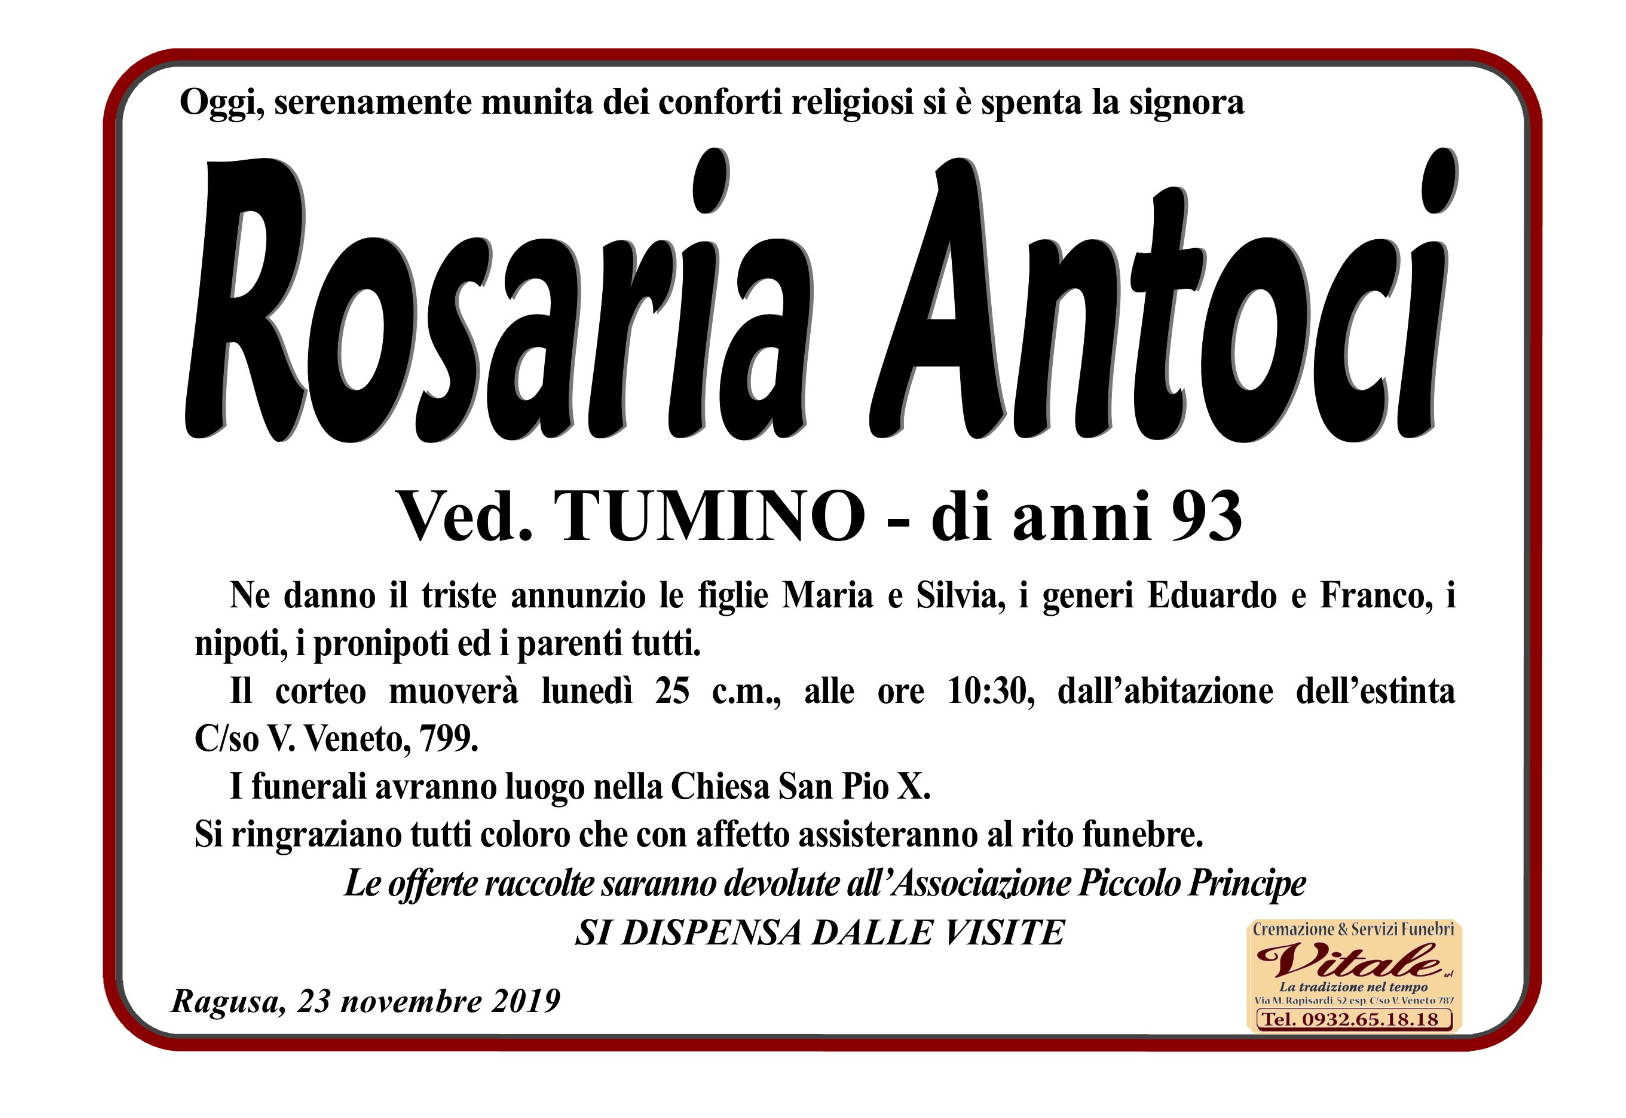 Rosaria Antoci